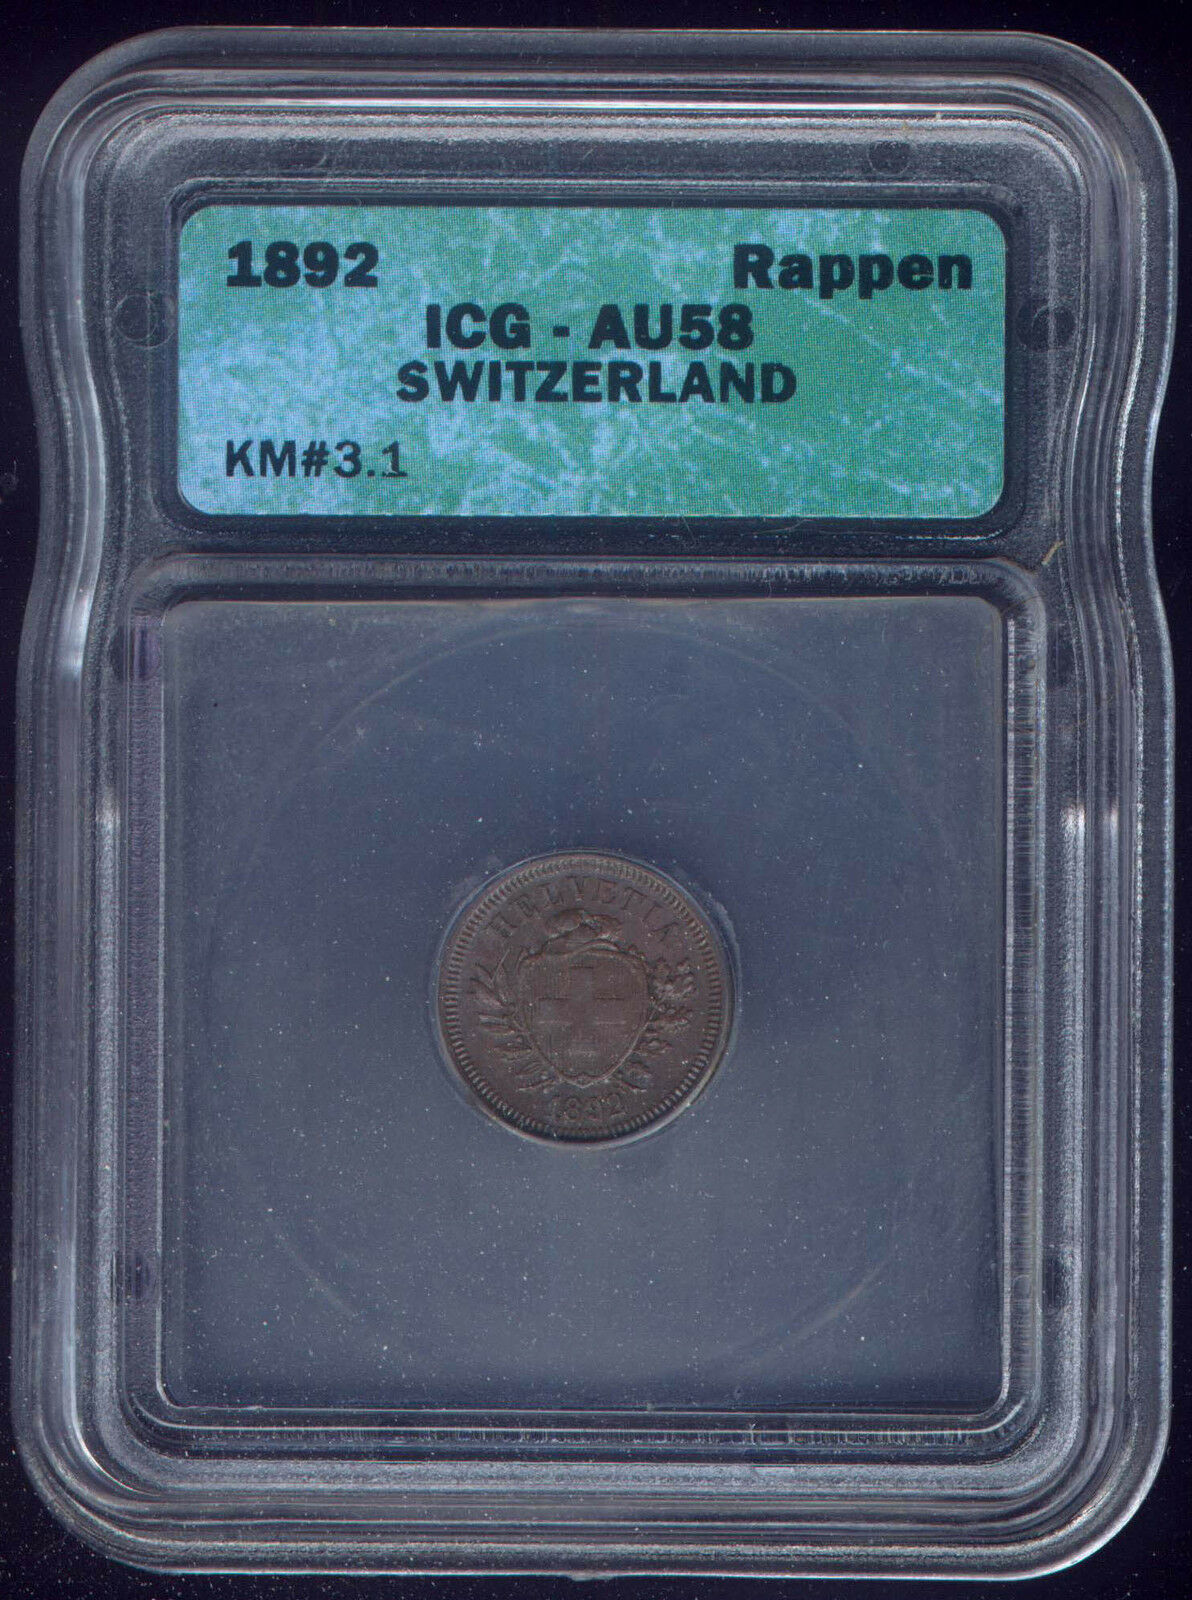 SWITZERLAND 1892 ONE ( 1 ) RAPPEN KM # 3.1 SLAB GRADED by ICG AU 58 MINTED BERN